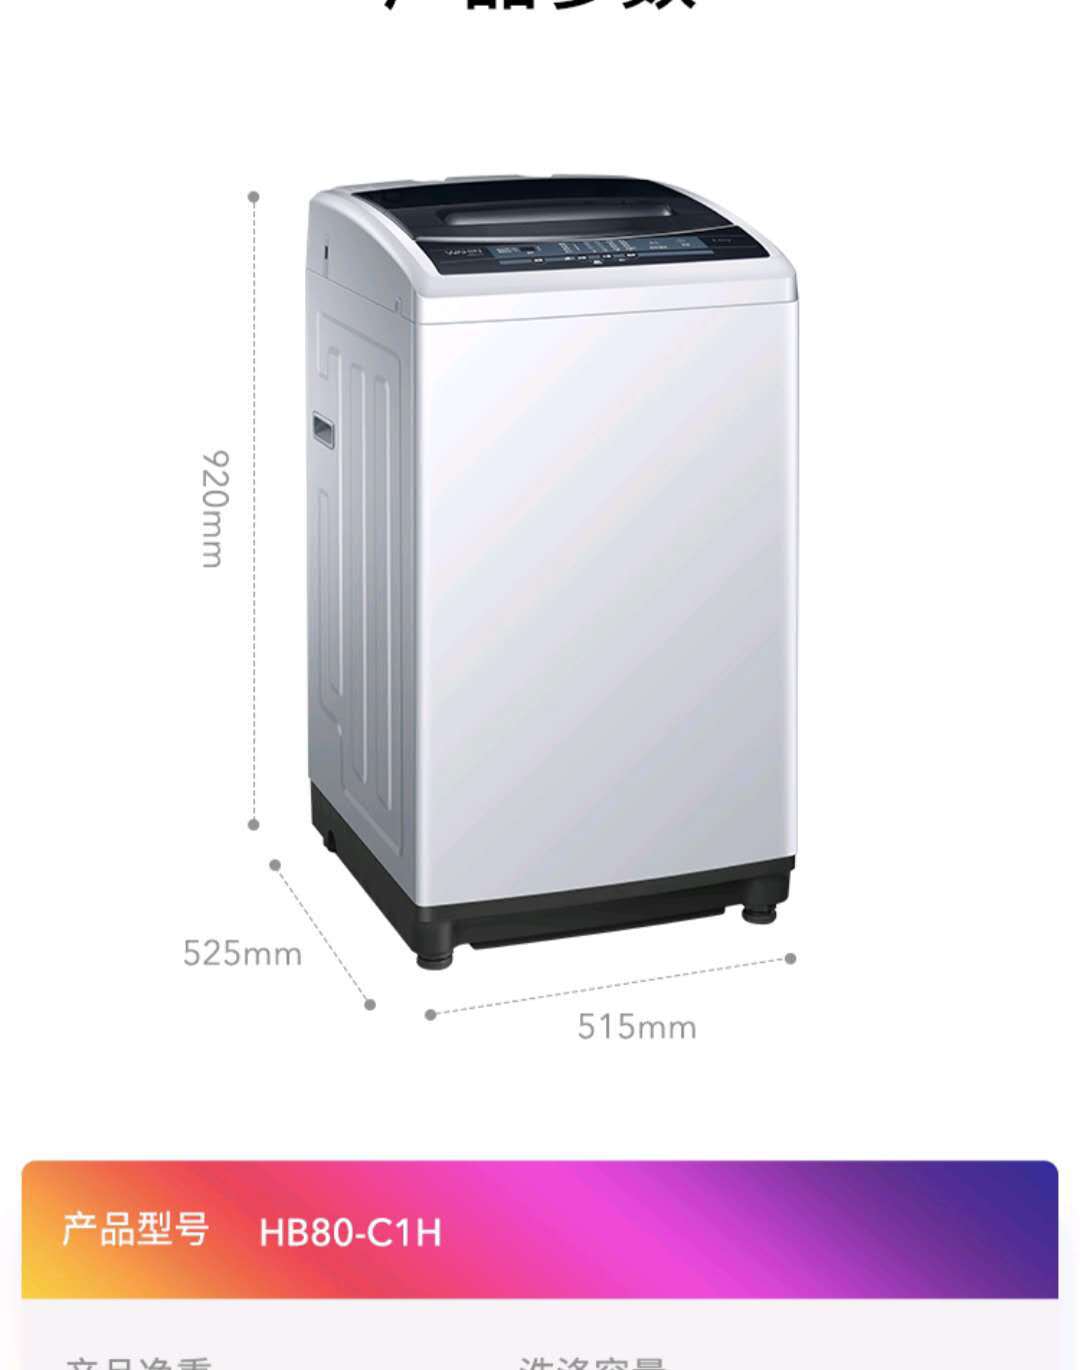 美的出品华凌HB100-C1H 10公斤全自动波轮洗衣机